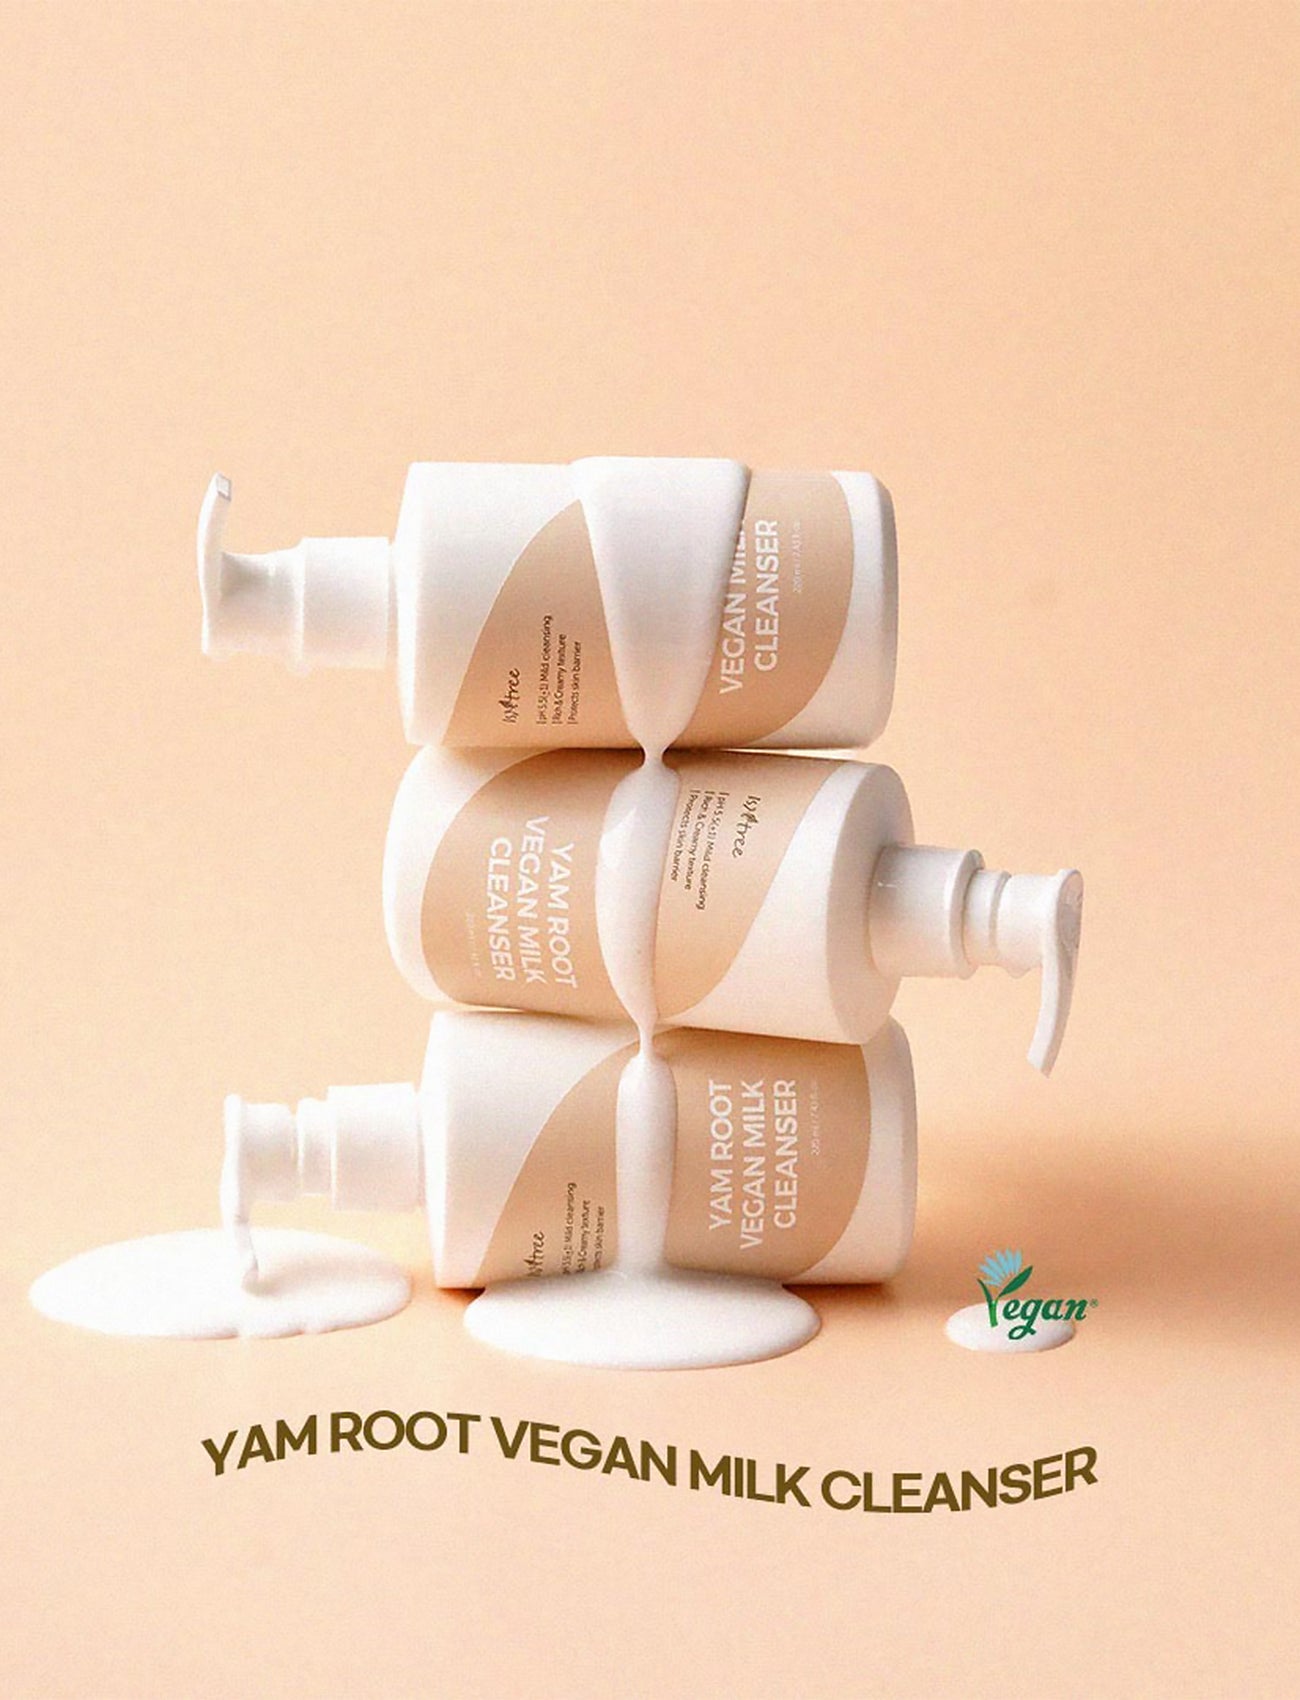 Yam Root Vegan Milk Cleanser